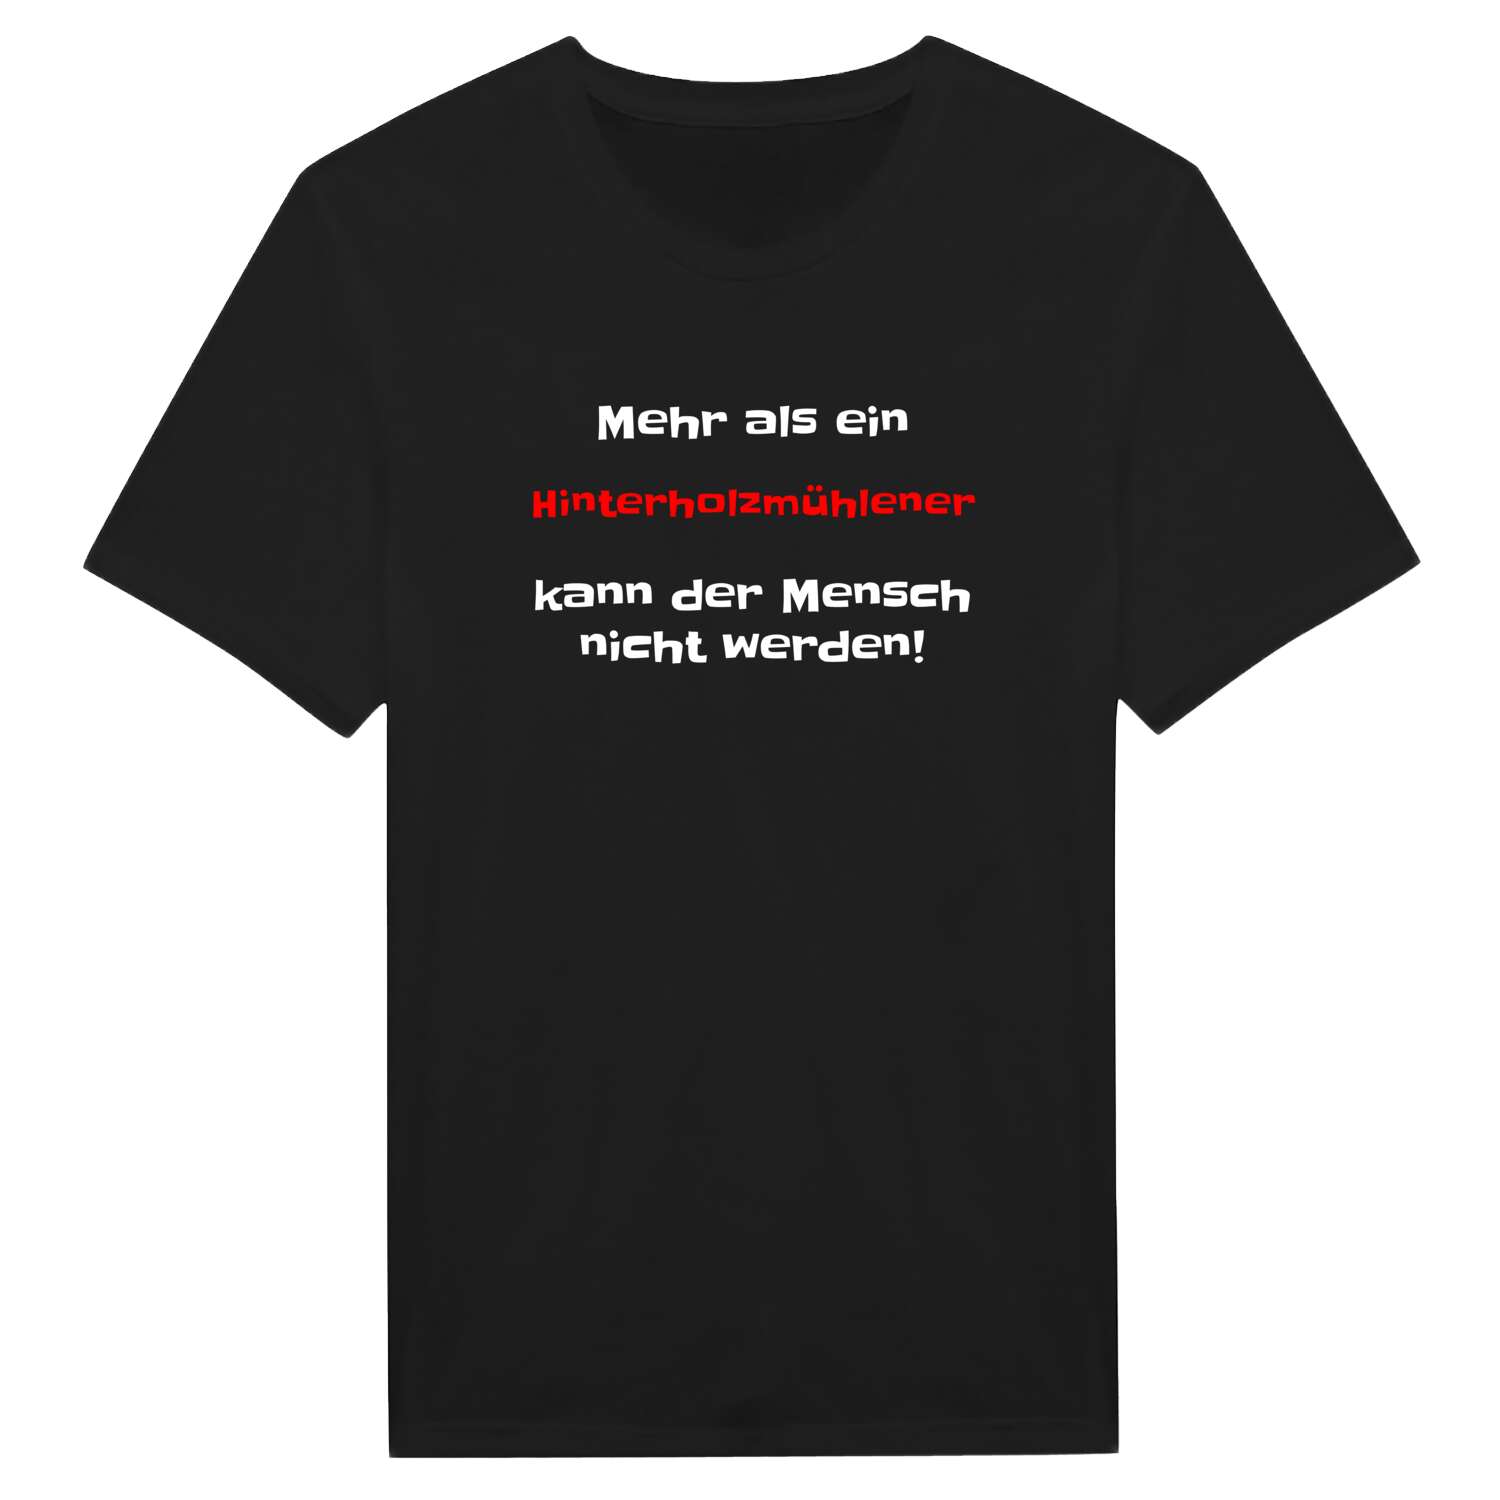 Hinterholzmühle T-Shirt »Mehr als ein«